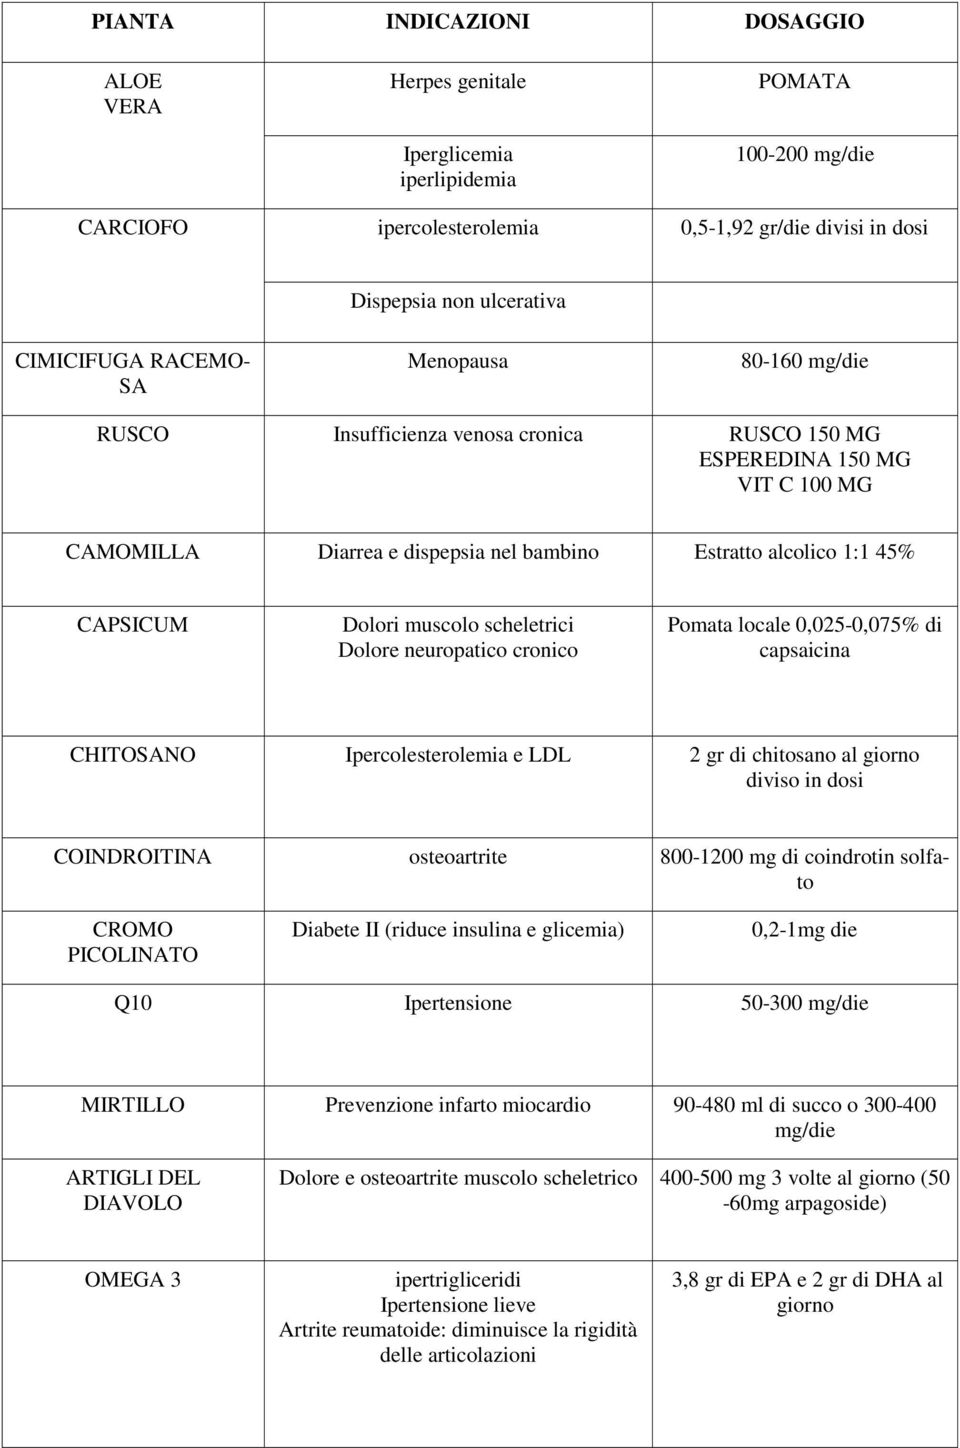 neuropatico cronico Pomata locale 0,025-0,075% di capsaicina CHITOSANO Ipercolesterolemia e LDL 2 gr di chitosano al giorno diviso in dosi COINDROITINA osteoartrite 800-1200 mg di coindrotin solfato